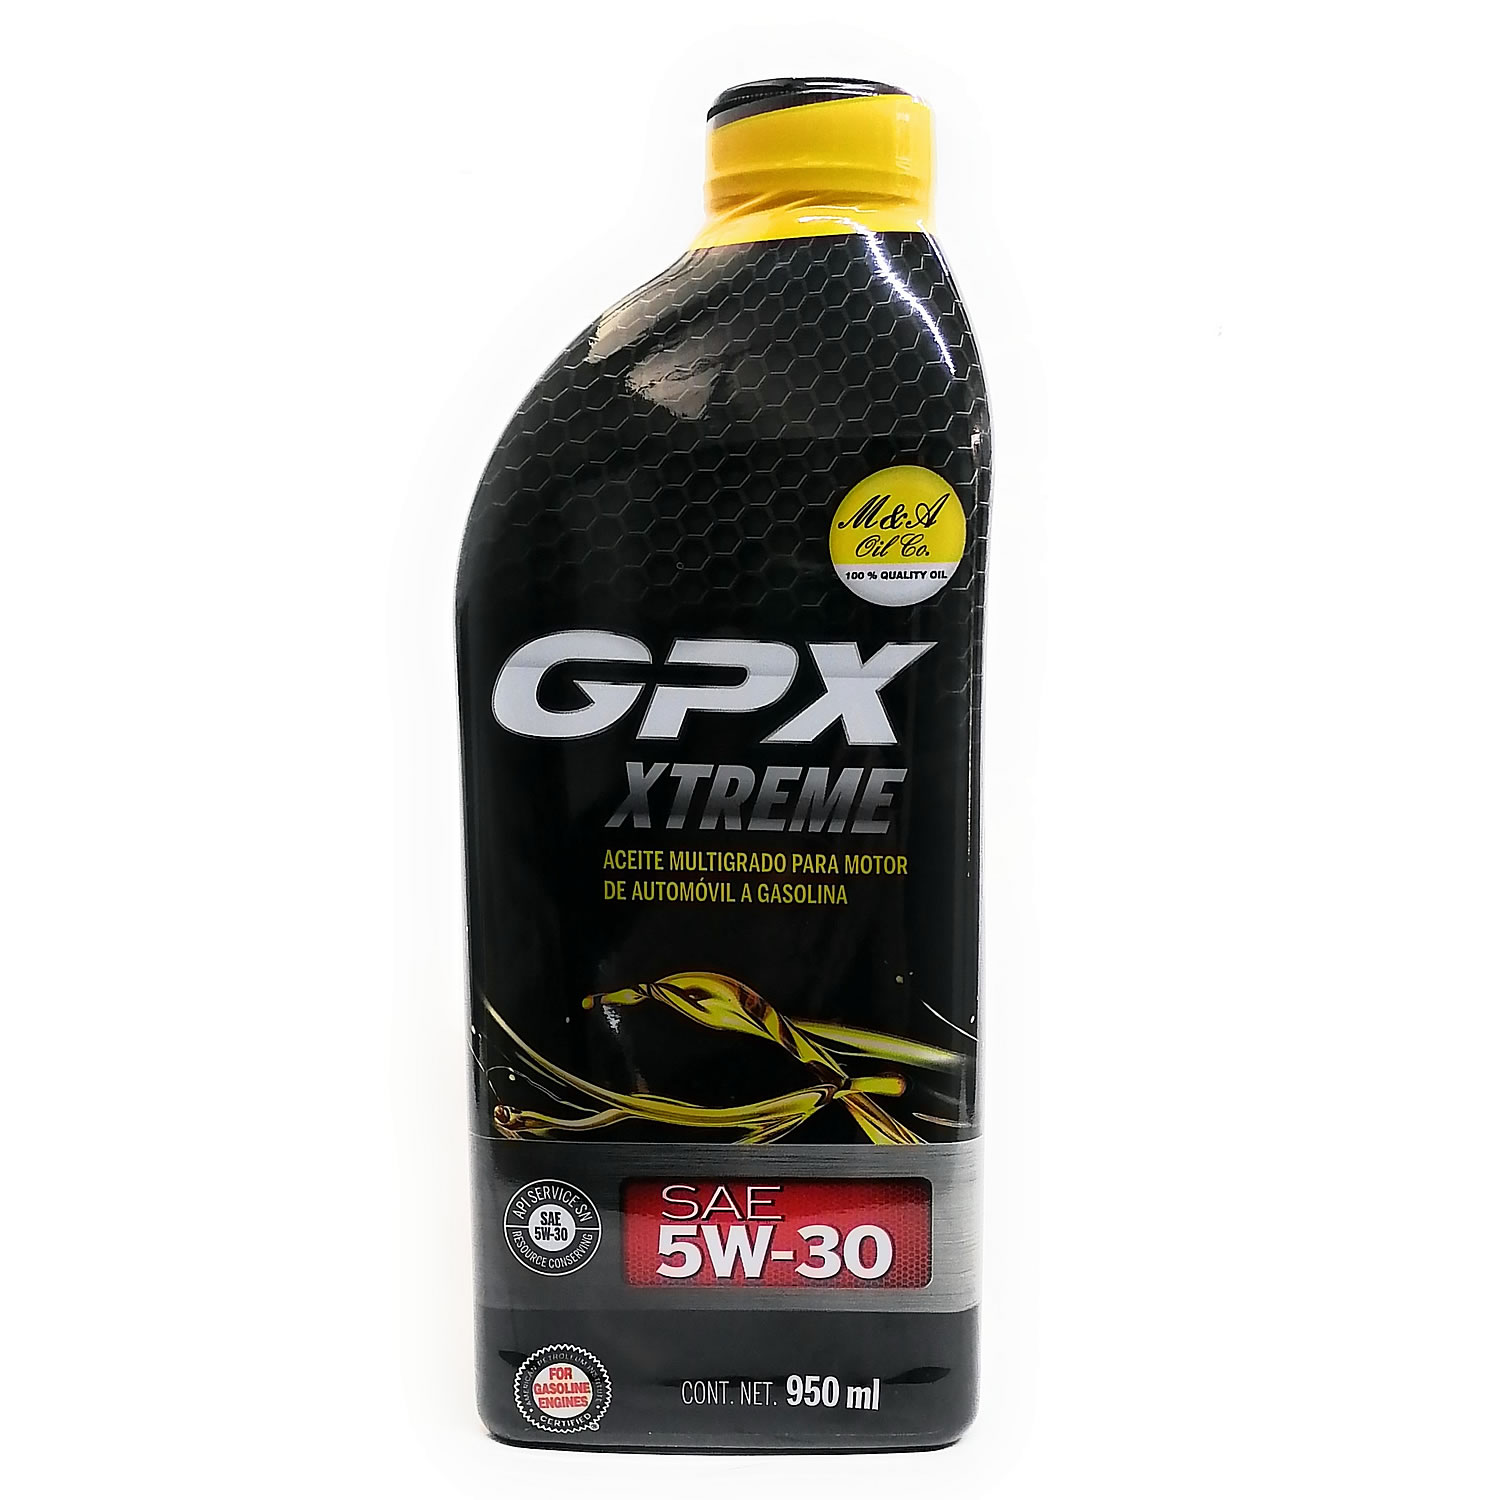 GPX EXTREME 5W30